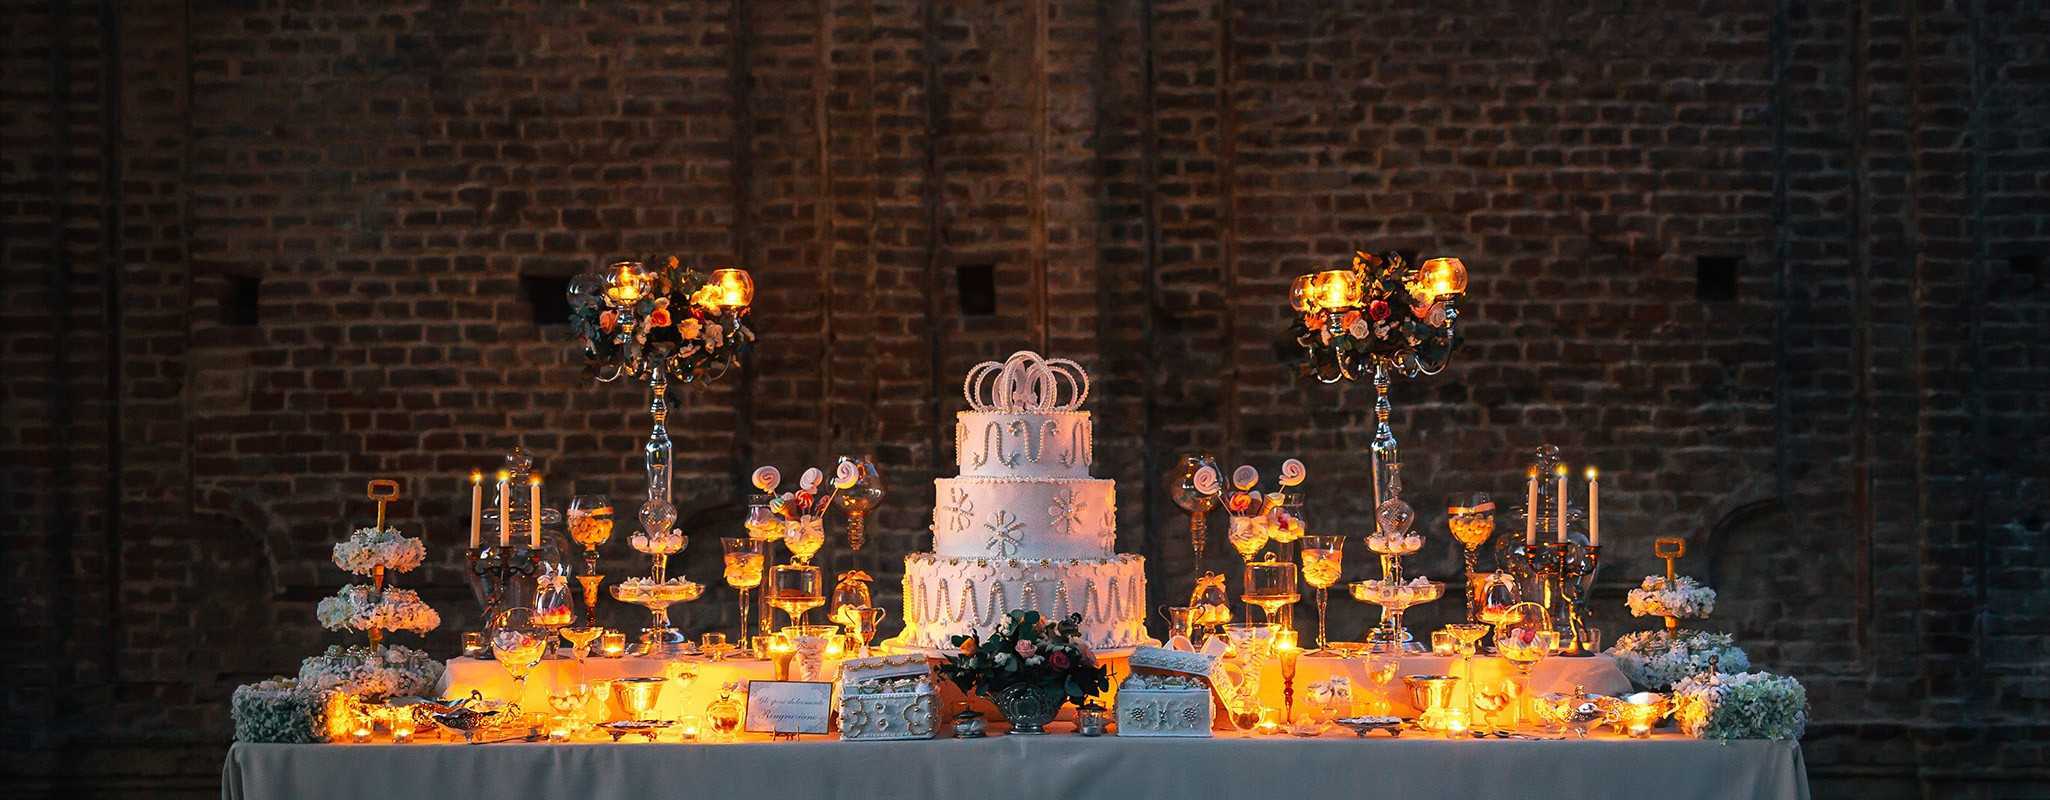 fiori-matrimonio-torino-floral-design-wedding-cake